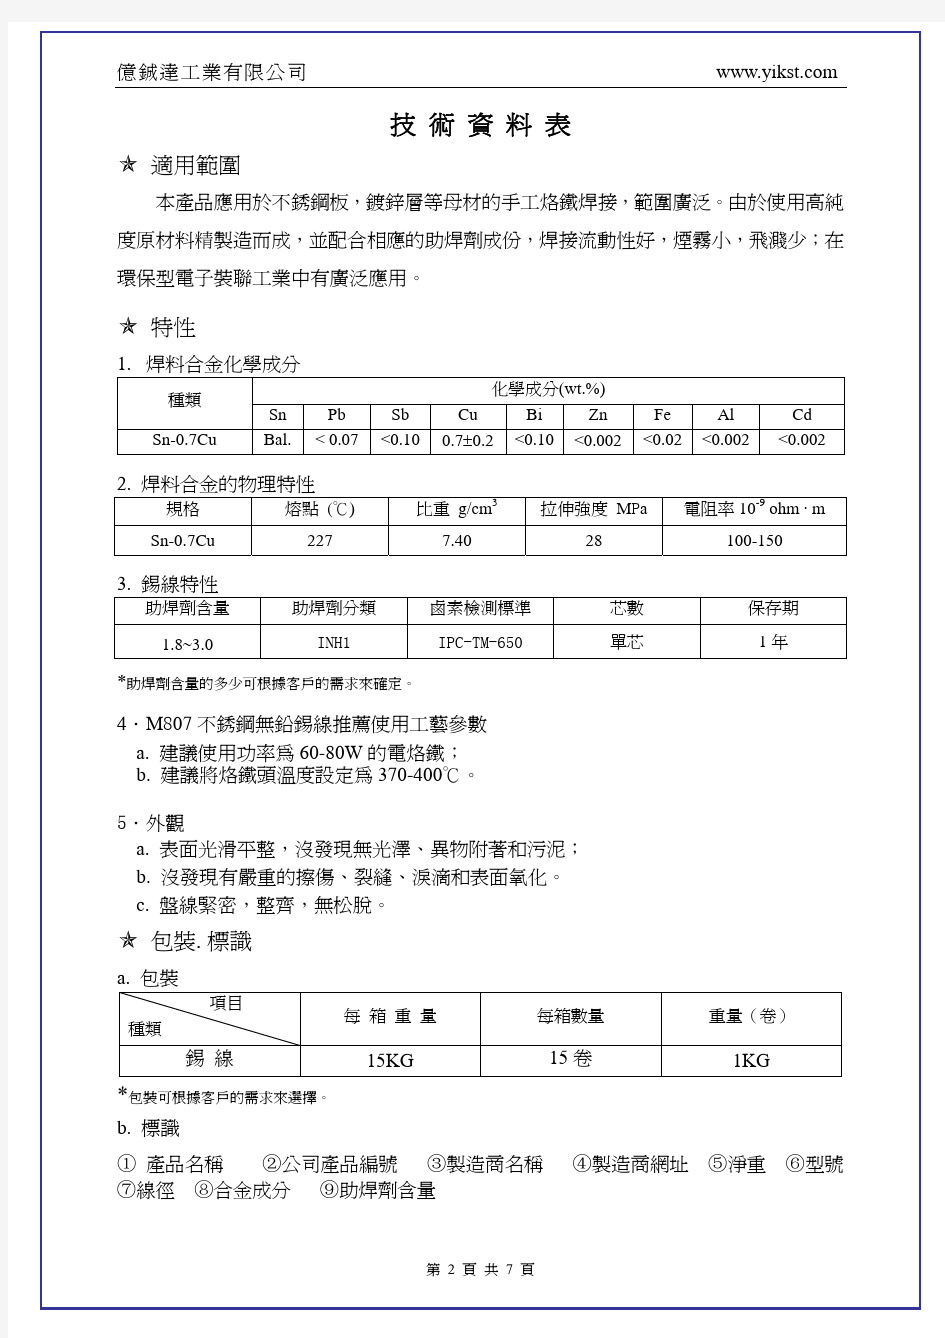 不锈钢锡线Sn-0.7Cu产品说明书-中文